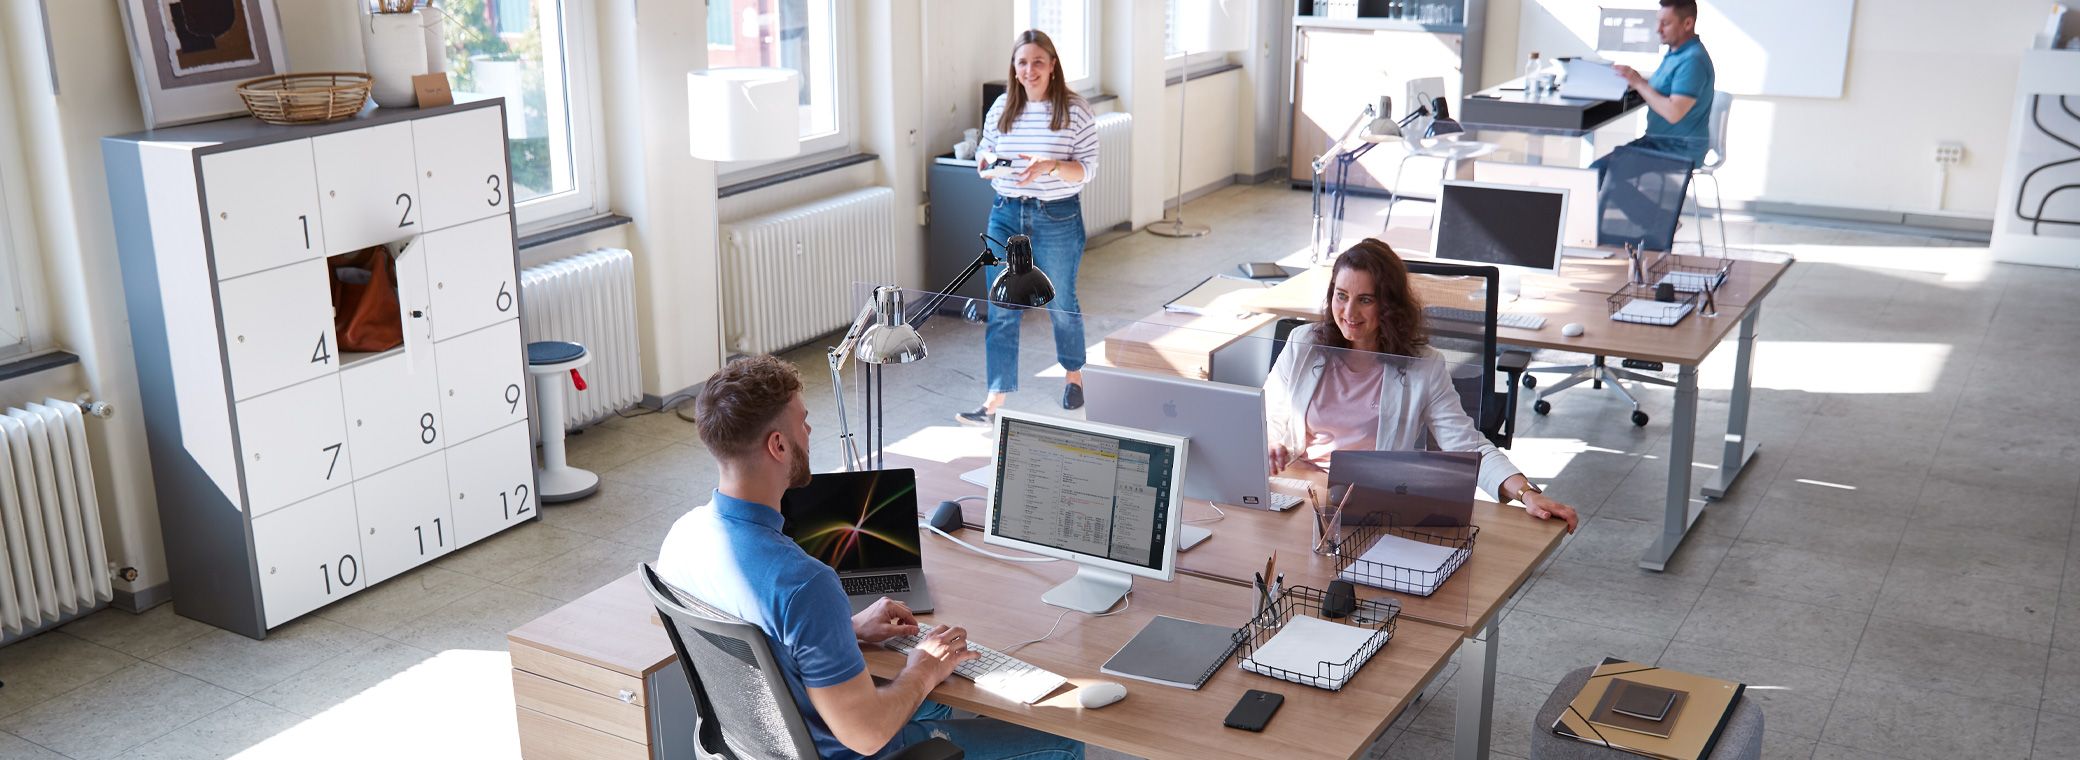 Büro mit flexiblen Desksharing-Arbeitsplätzen und vier Mitarbeitern.